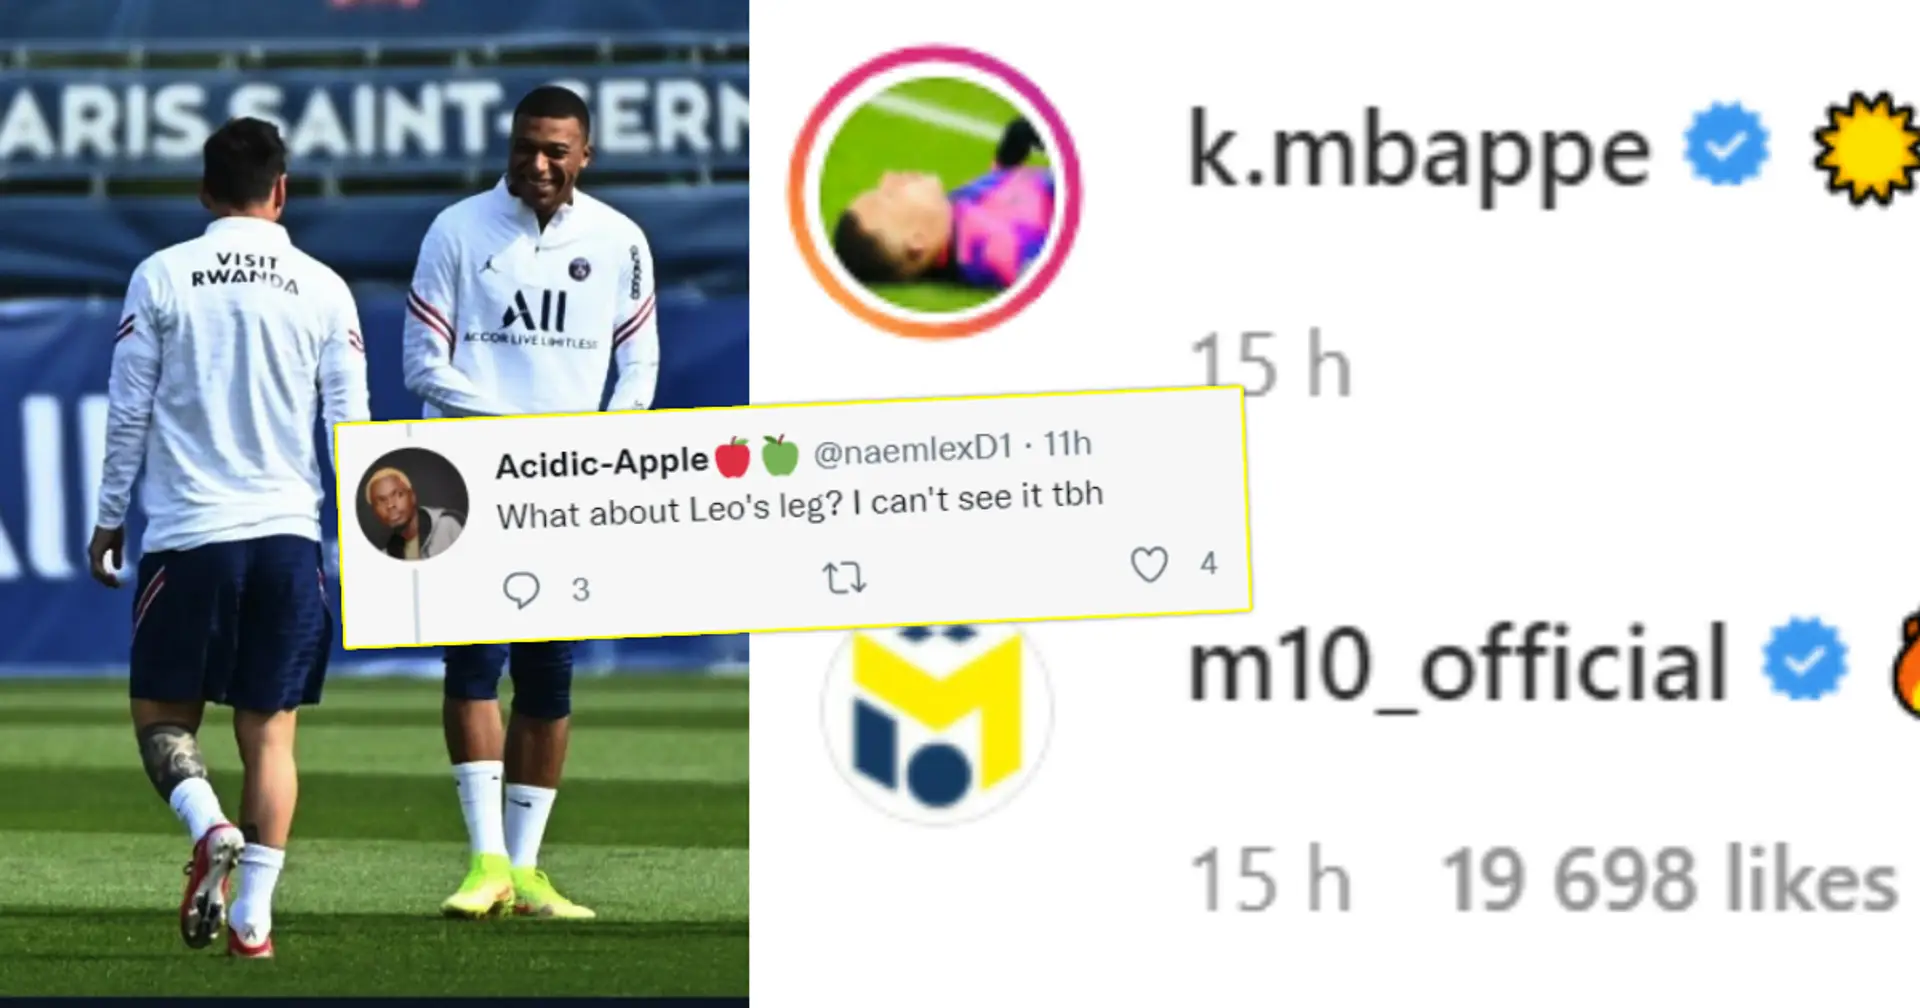 "Schau dir Messis Beine an": Fans diskutieren, ob Mbappe 2 PSG-Teamkollegen für einen Instagram-Post mit Messi aus dem Bild ausgeschnitten hat